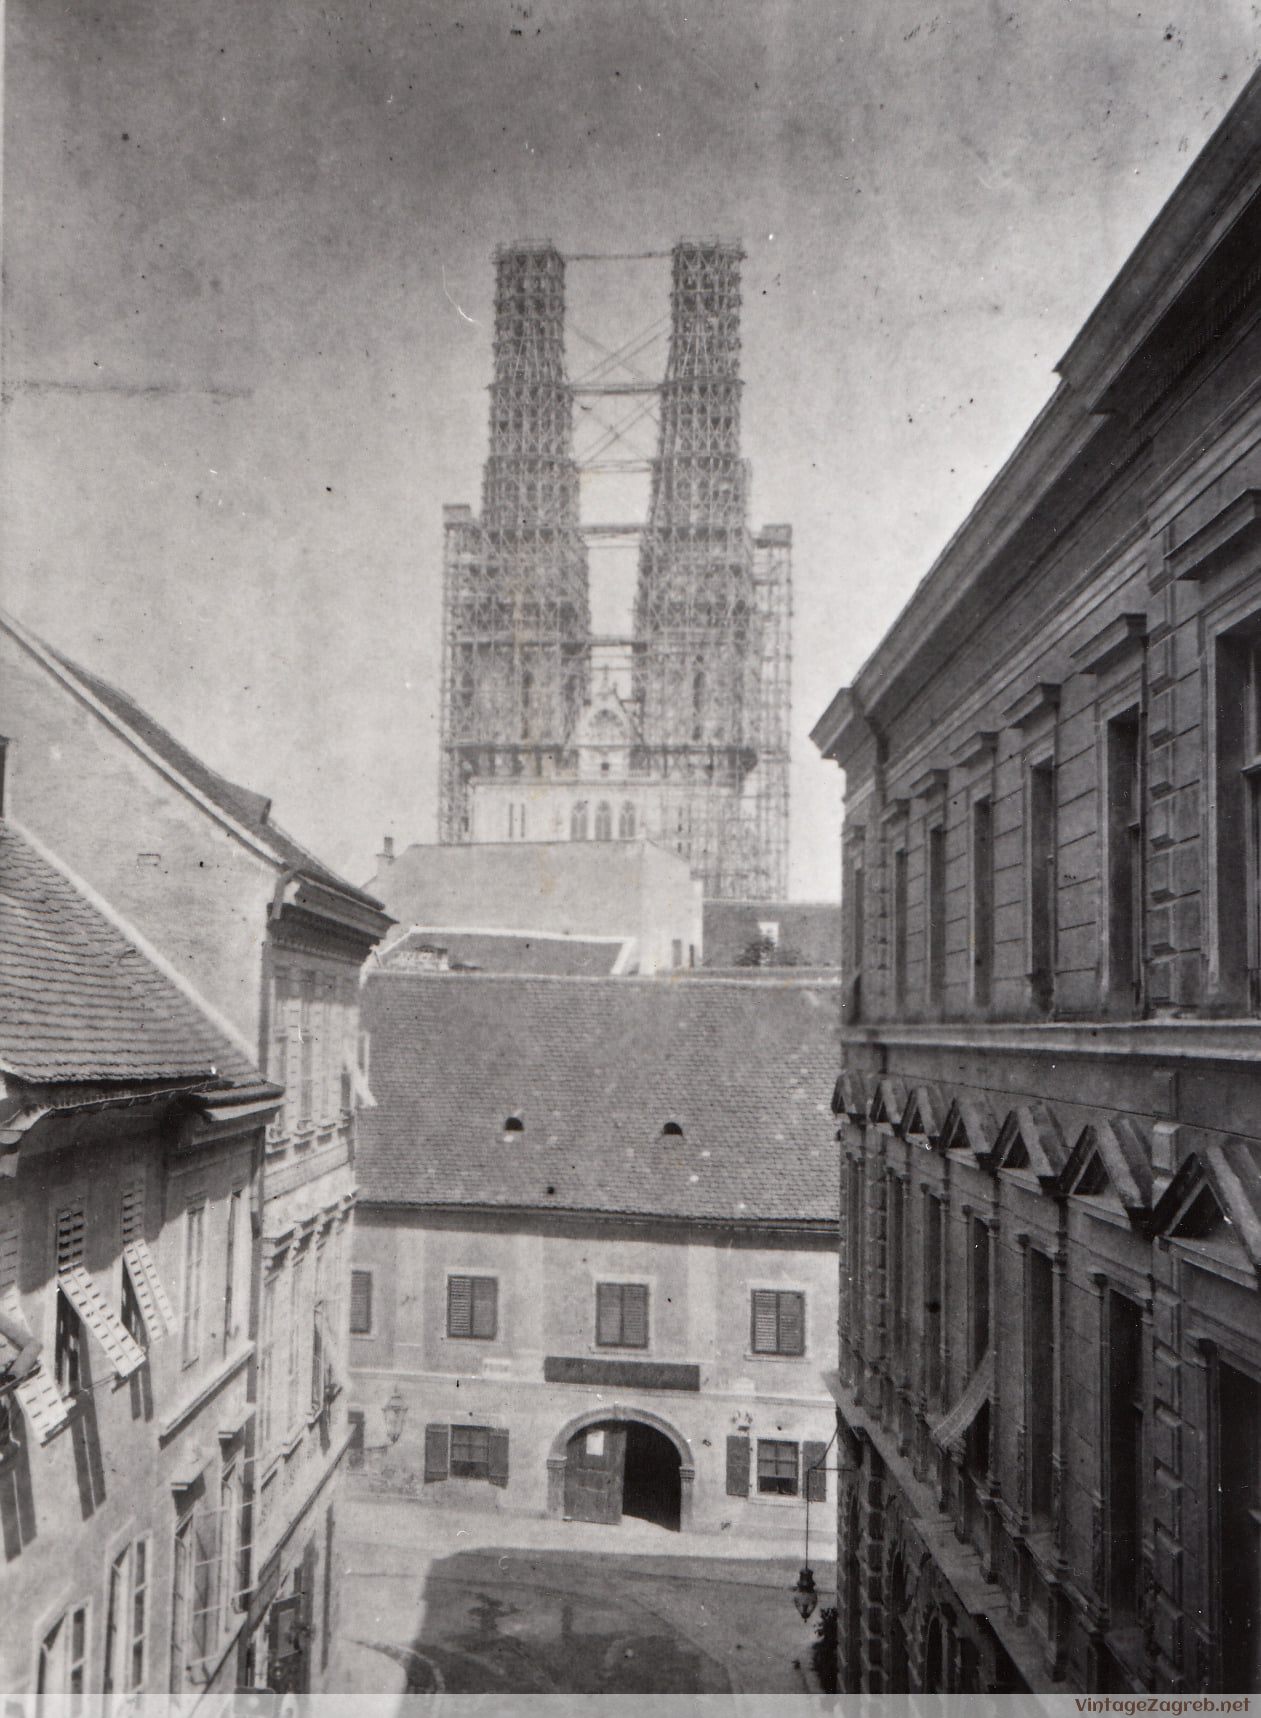 Pogled iz Radićeve na Krvavi most, Tkalčićevu i gradnju tornjeva katedrale na Kaptolu oko 1900 — oko 1900